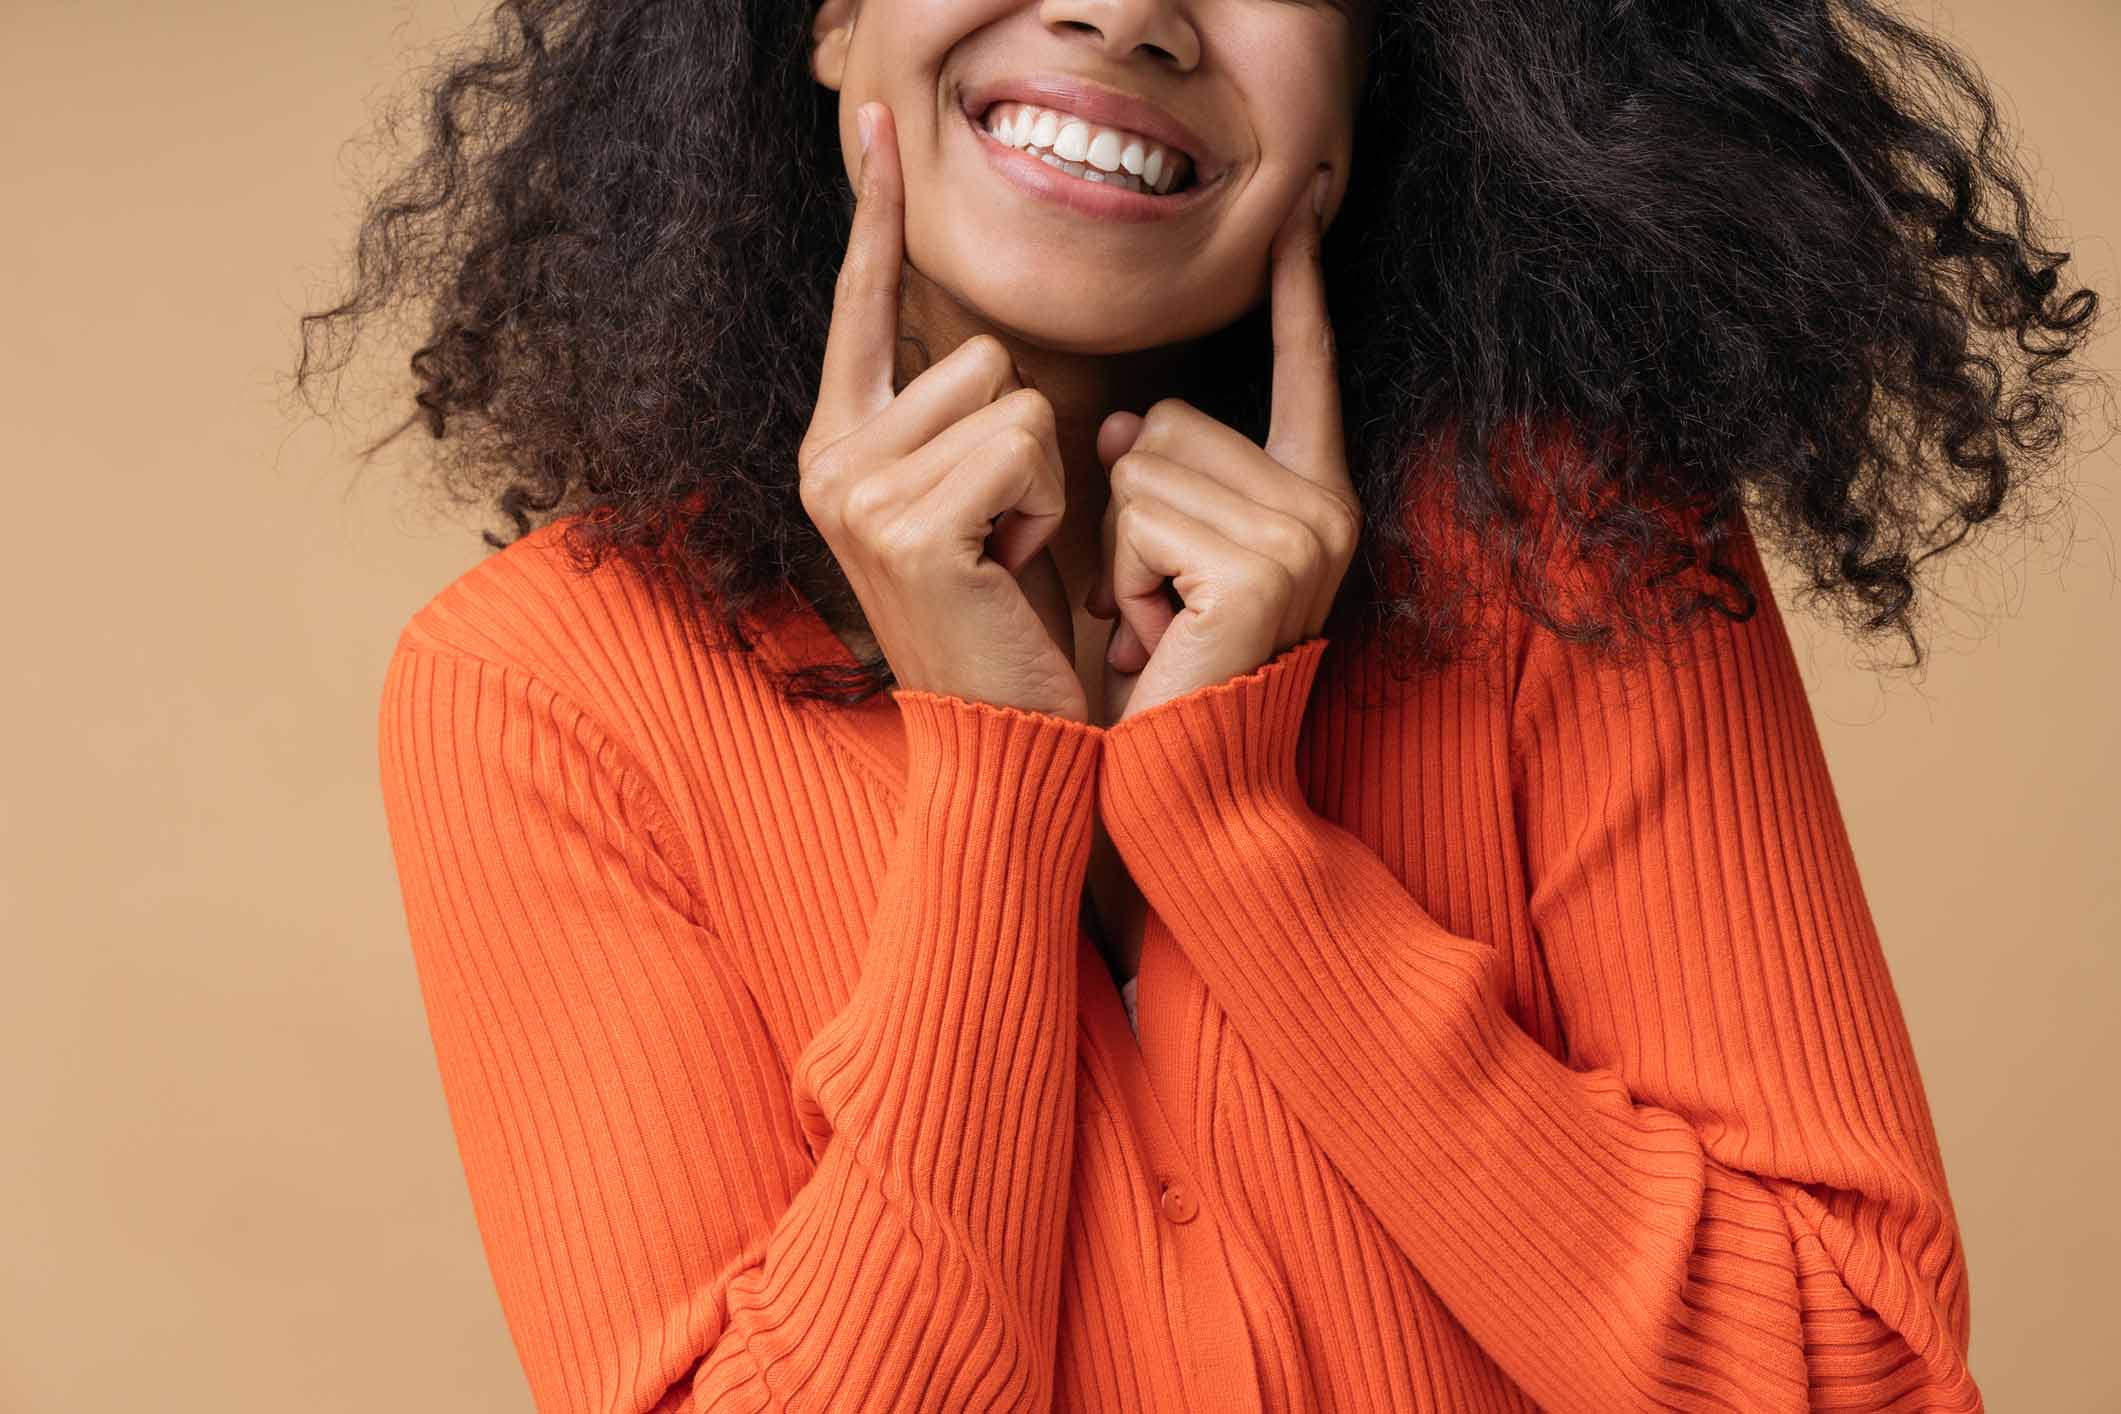 Girl in orange sweater smiling